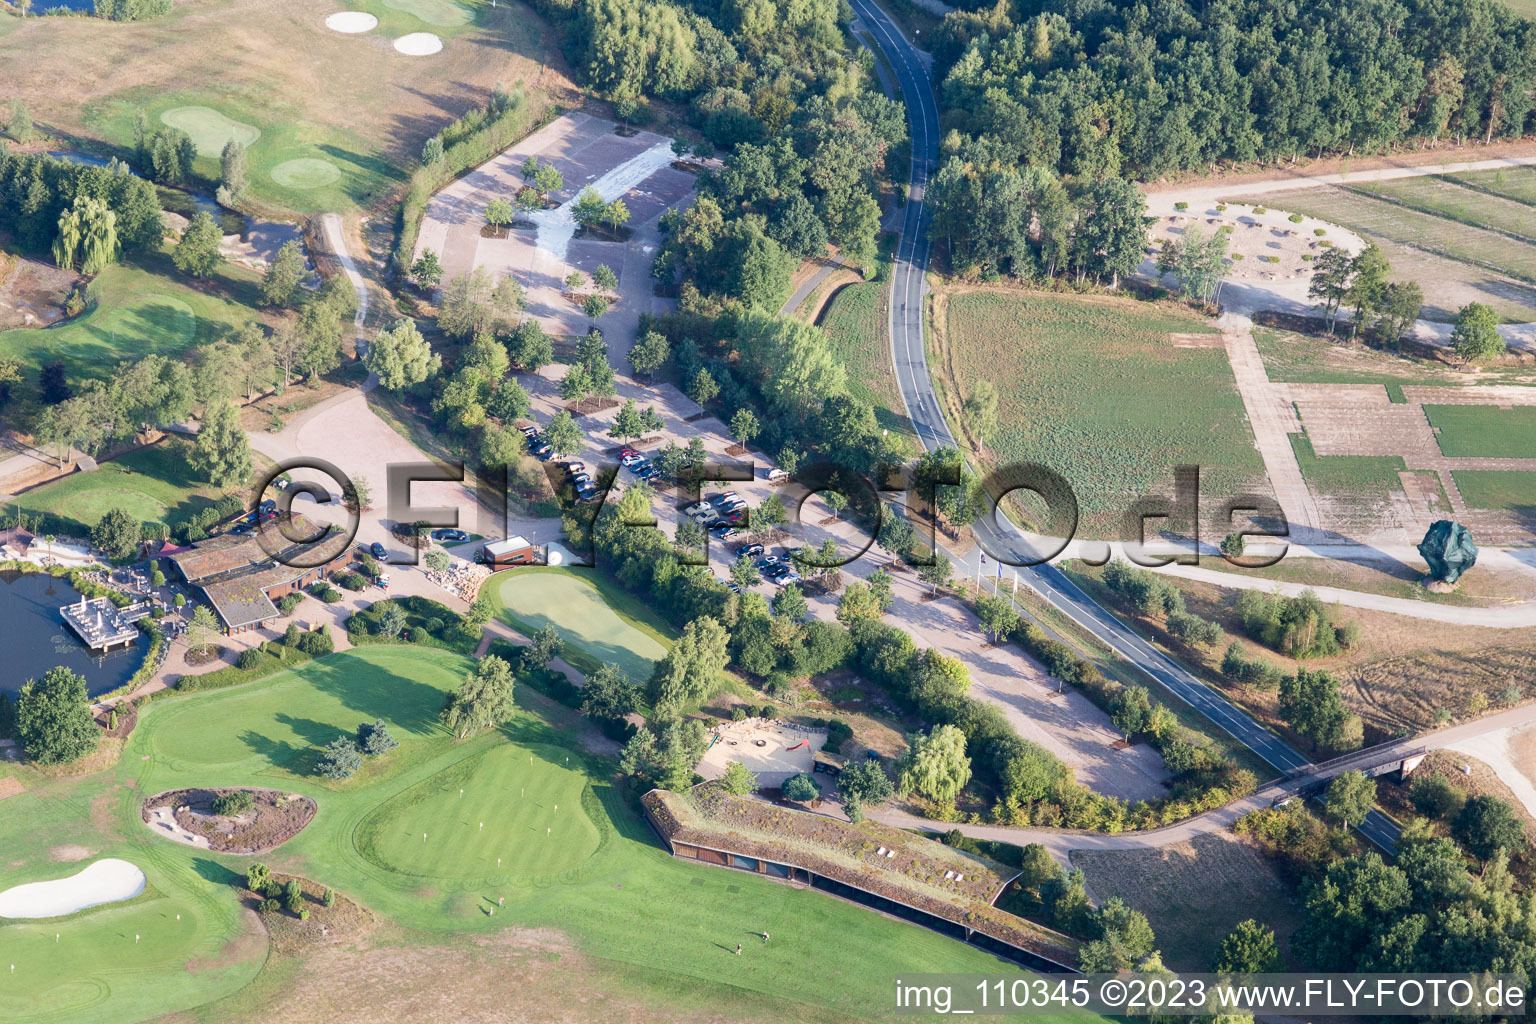 Vue aérienne de Terrain du parcours de golf Green Eagle à Winsen (Luhe) dans le département Basse-Saxe, Allemagne